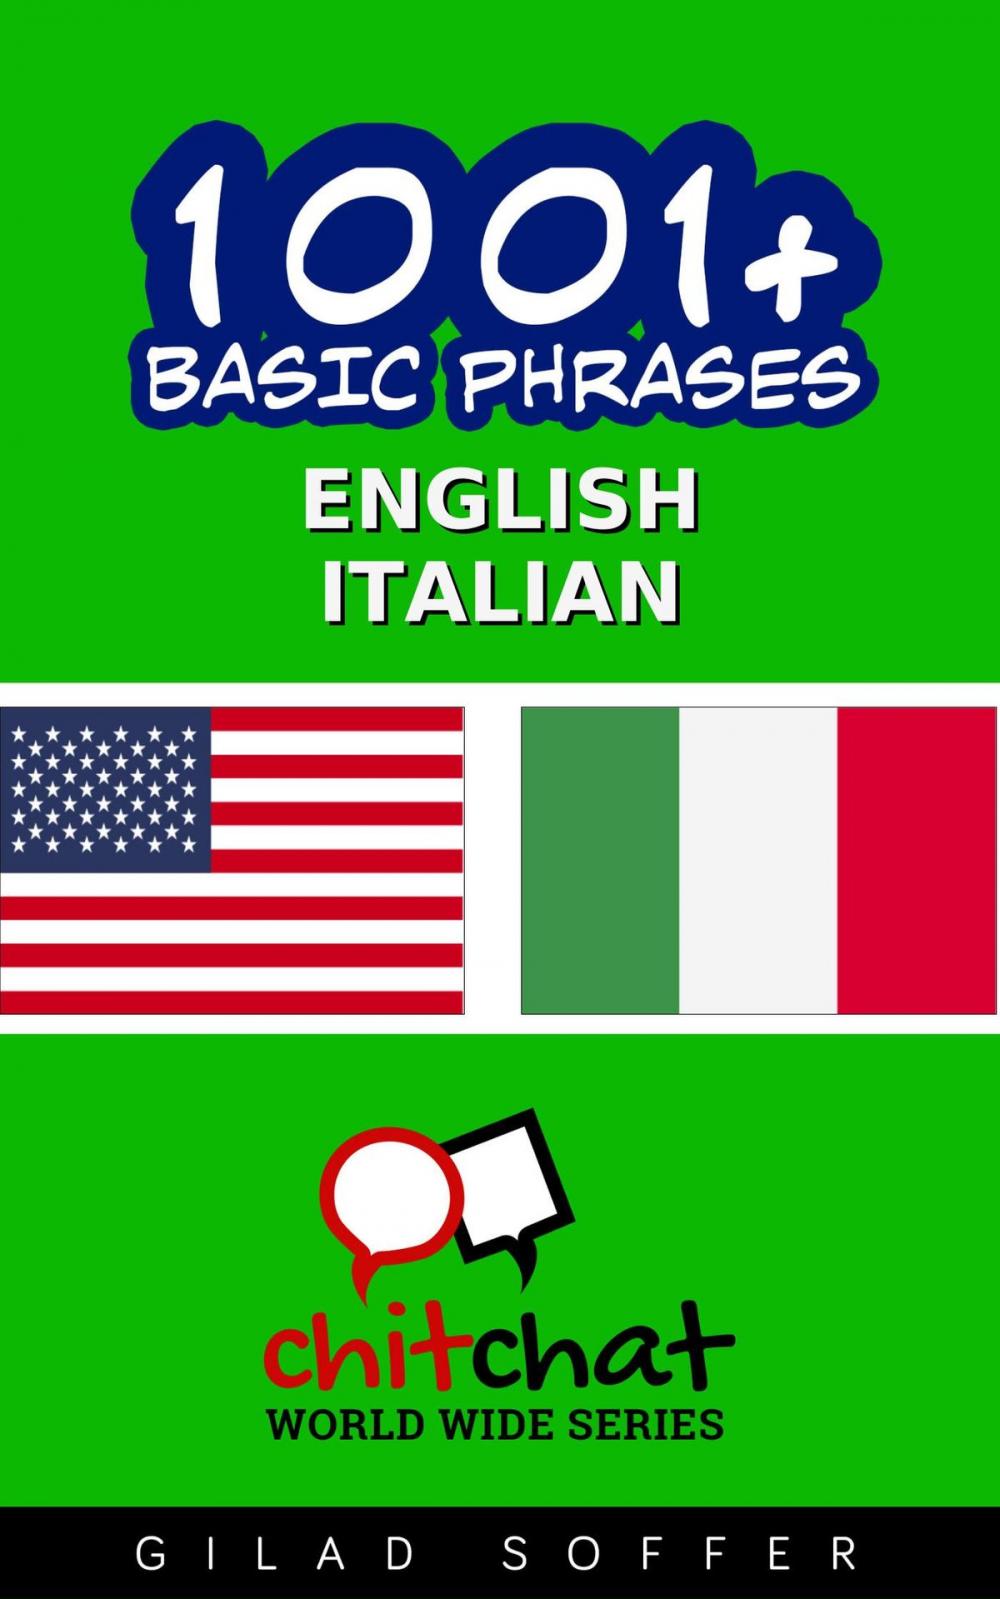 Big bigCover of 1001+ Basic Phrases English - Italian